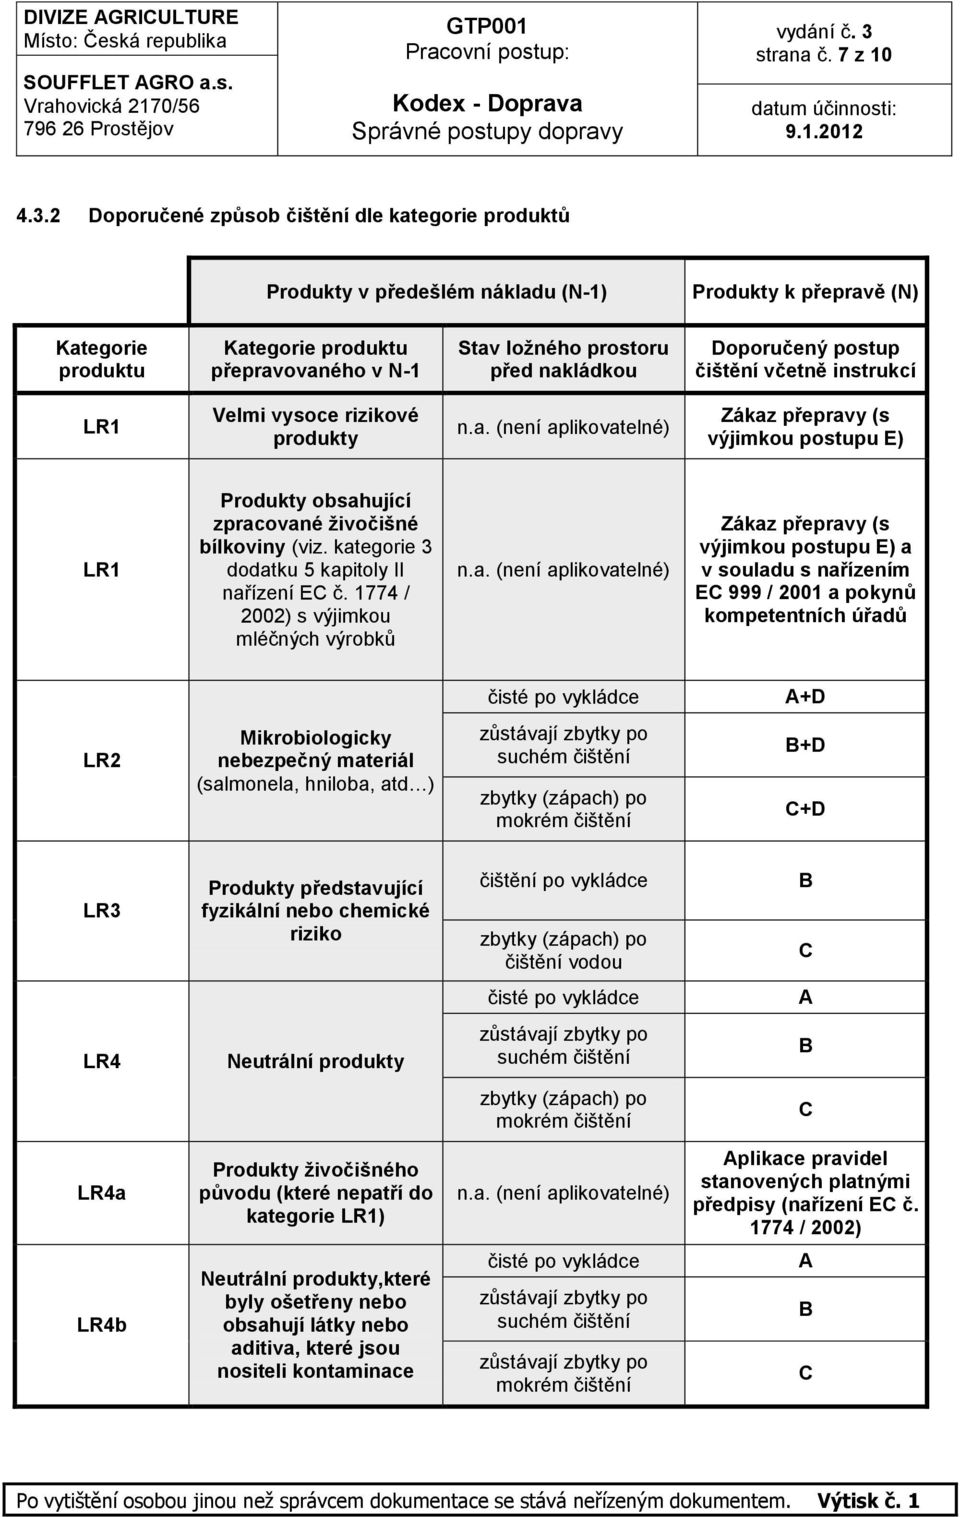 nakládkou Doporučený postup čištění včetně instrukcí LR1 Velmi vysoce rizikové produkty n.a. (není aplikovatelné) Zákaz přepravy (s výjimkou postupu E) LR1 Produkty obsahující zpracované ţivočišné bílkoviny (viz.